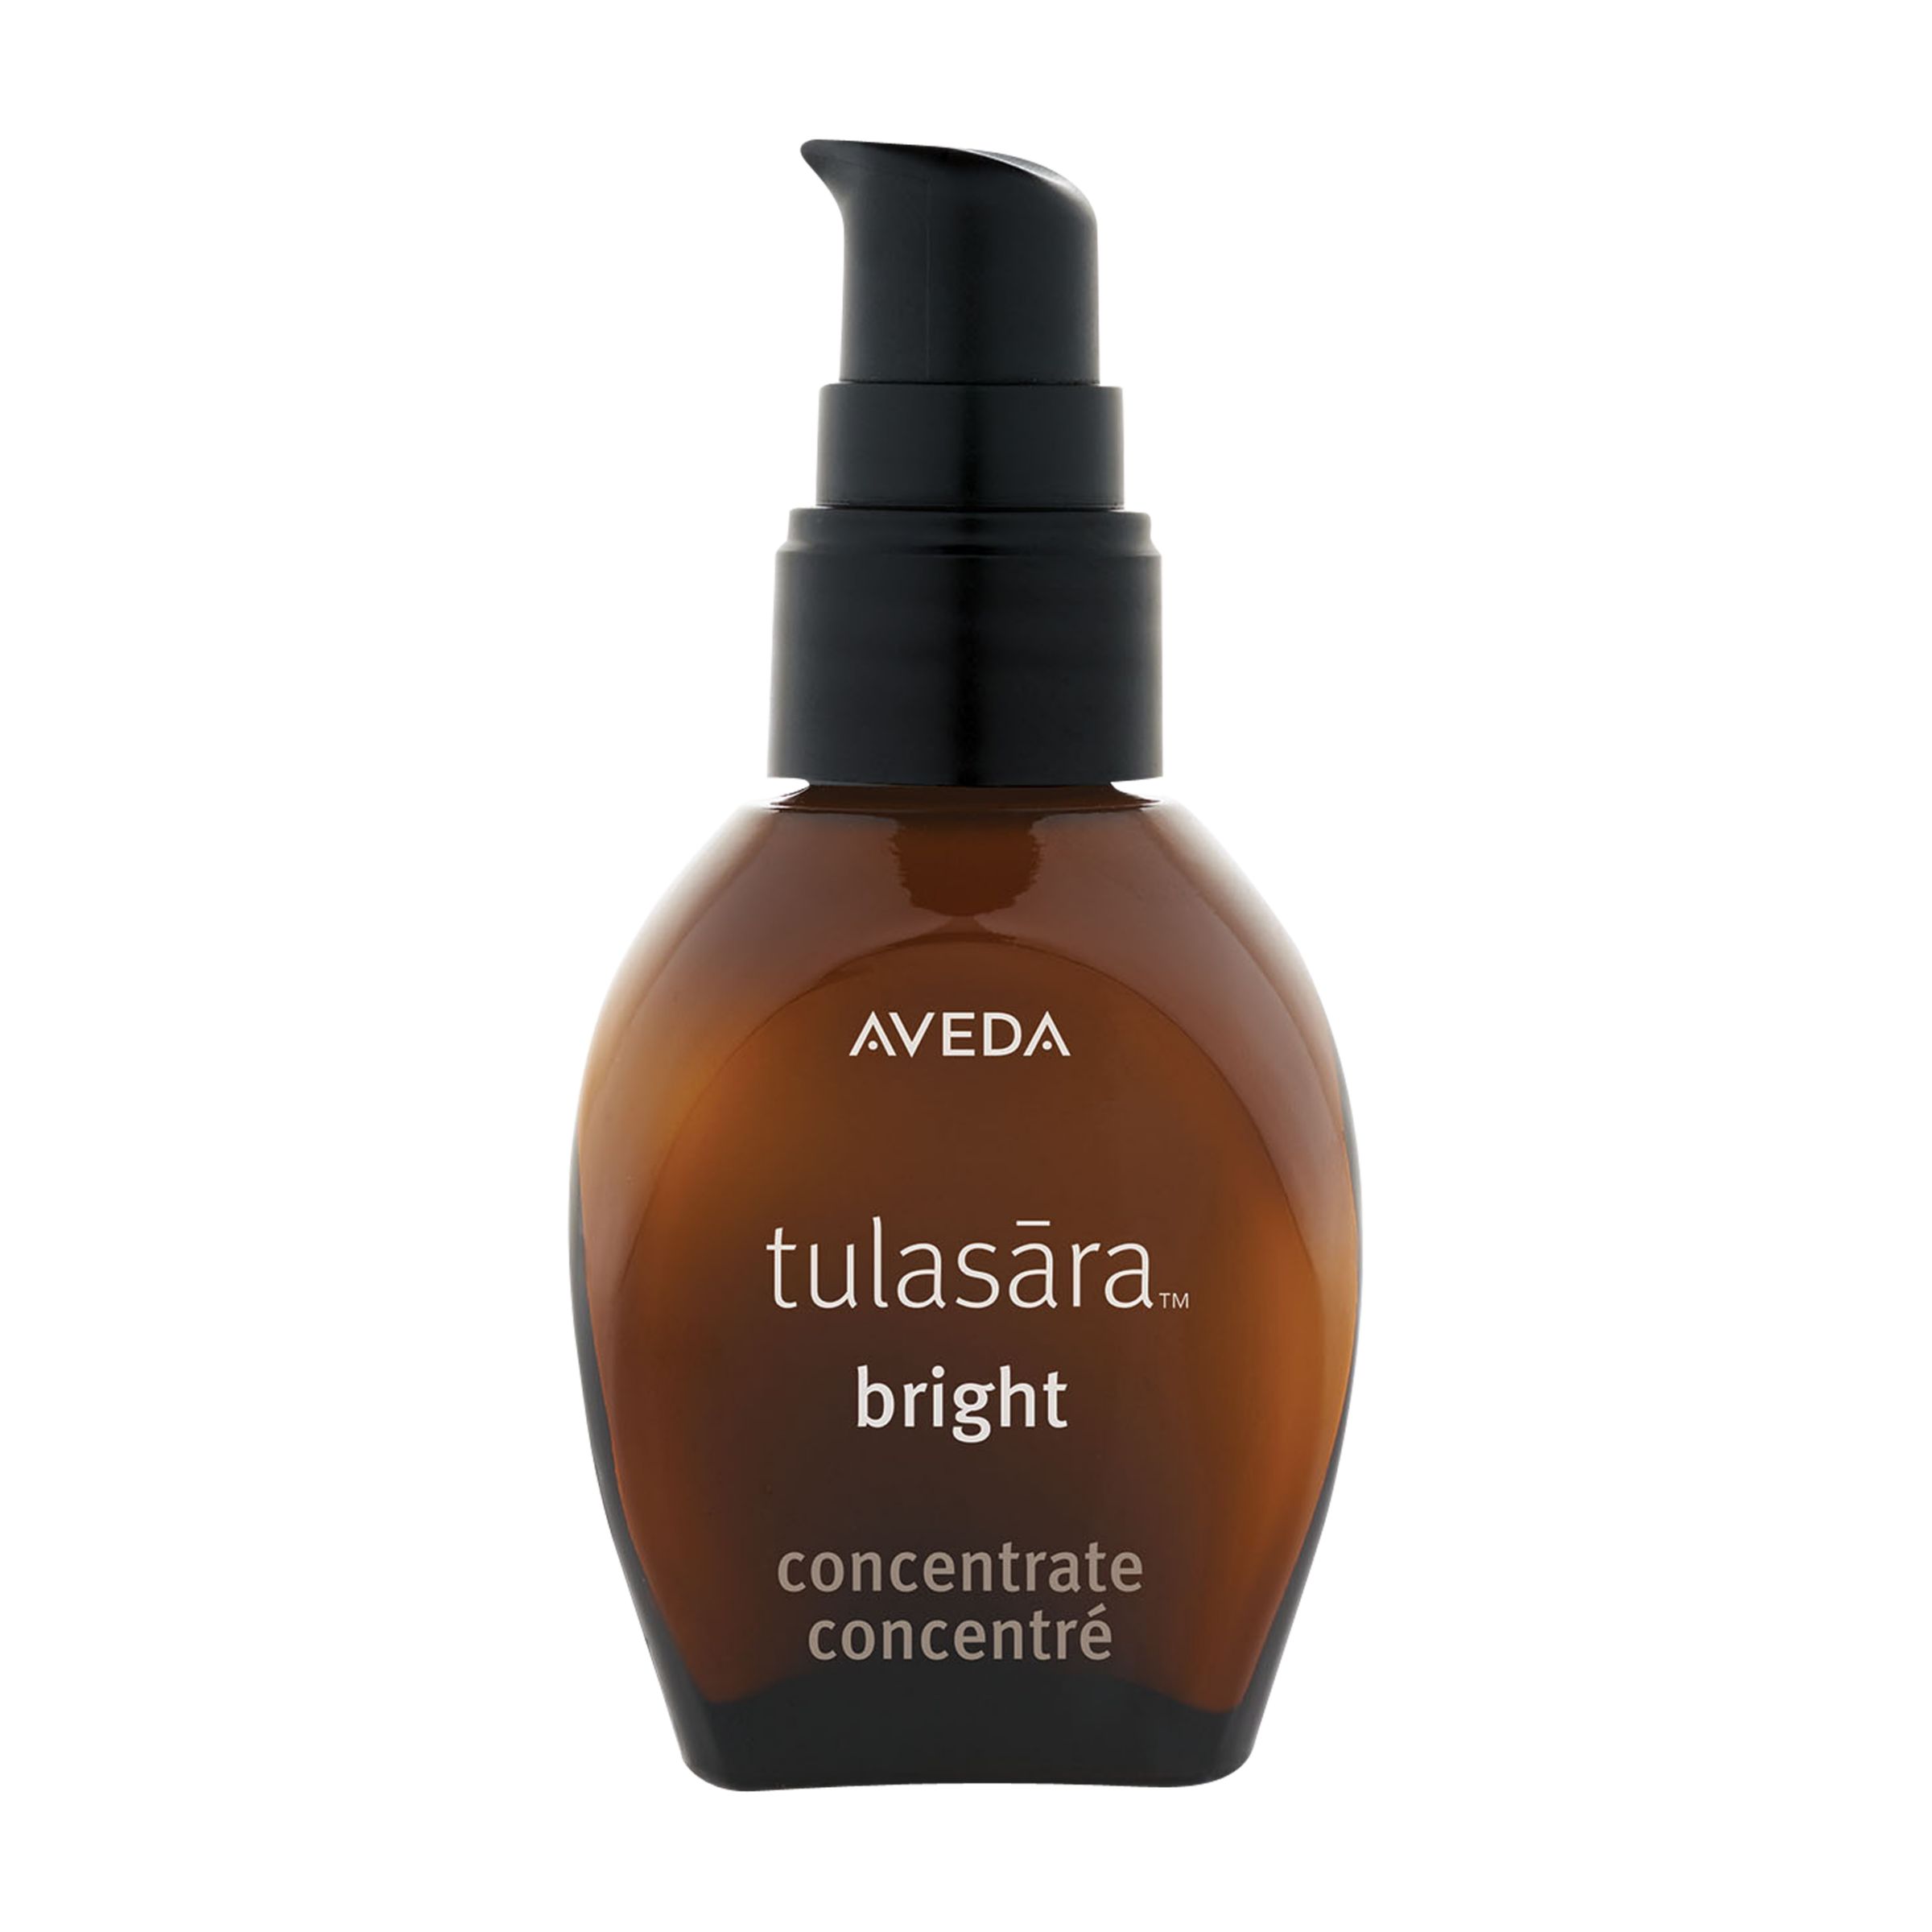 Aveda Tulasara Bright Concentrate Facial Treatment, 30ml 1